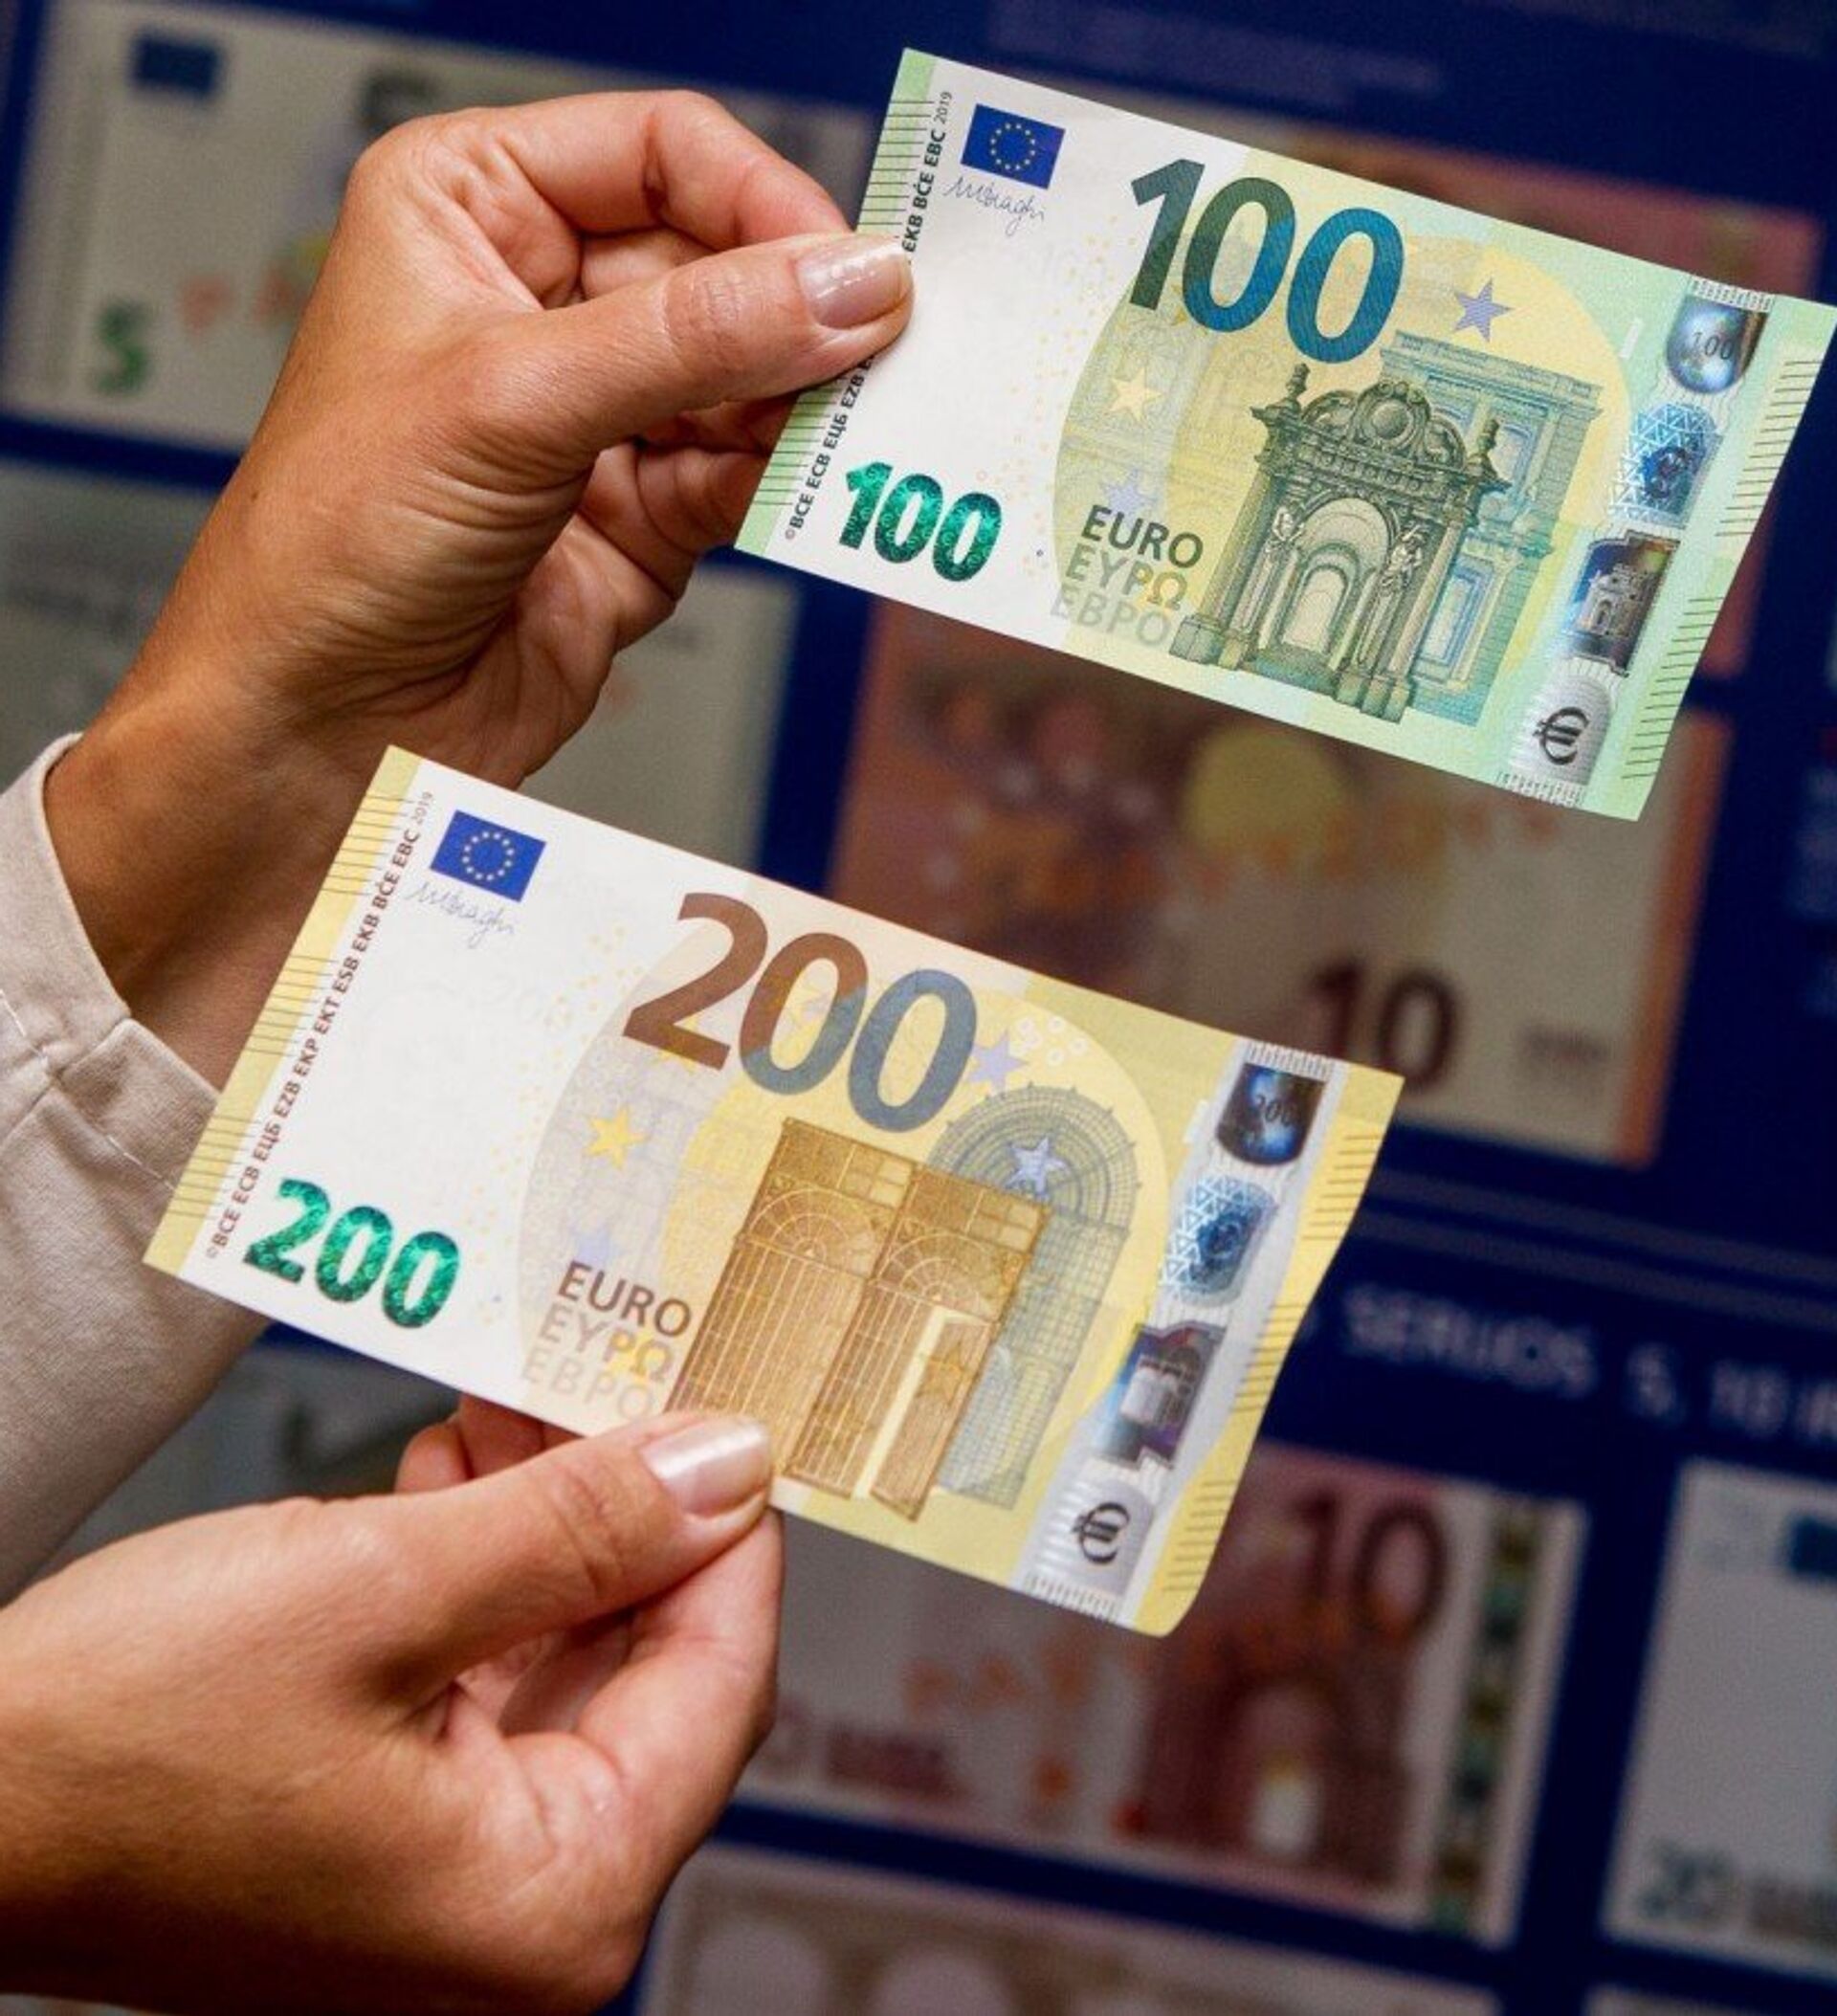 Купюра валют. Купюра 200 евро. Евро банкноты номинал 200. Новые купюры евро. 100 И 200 евро.